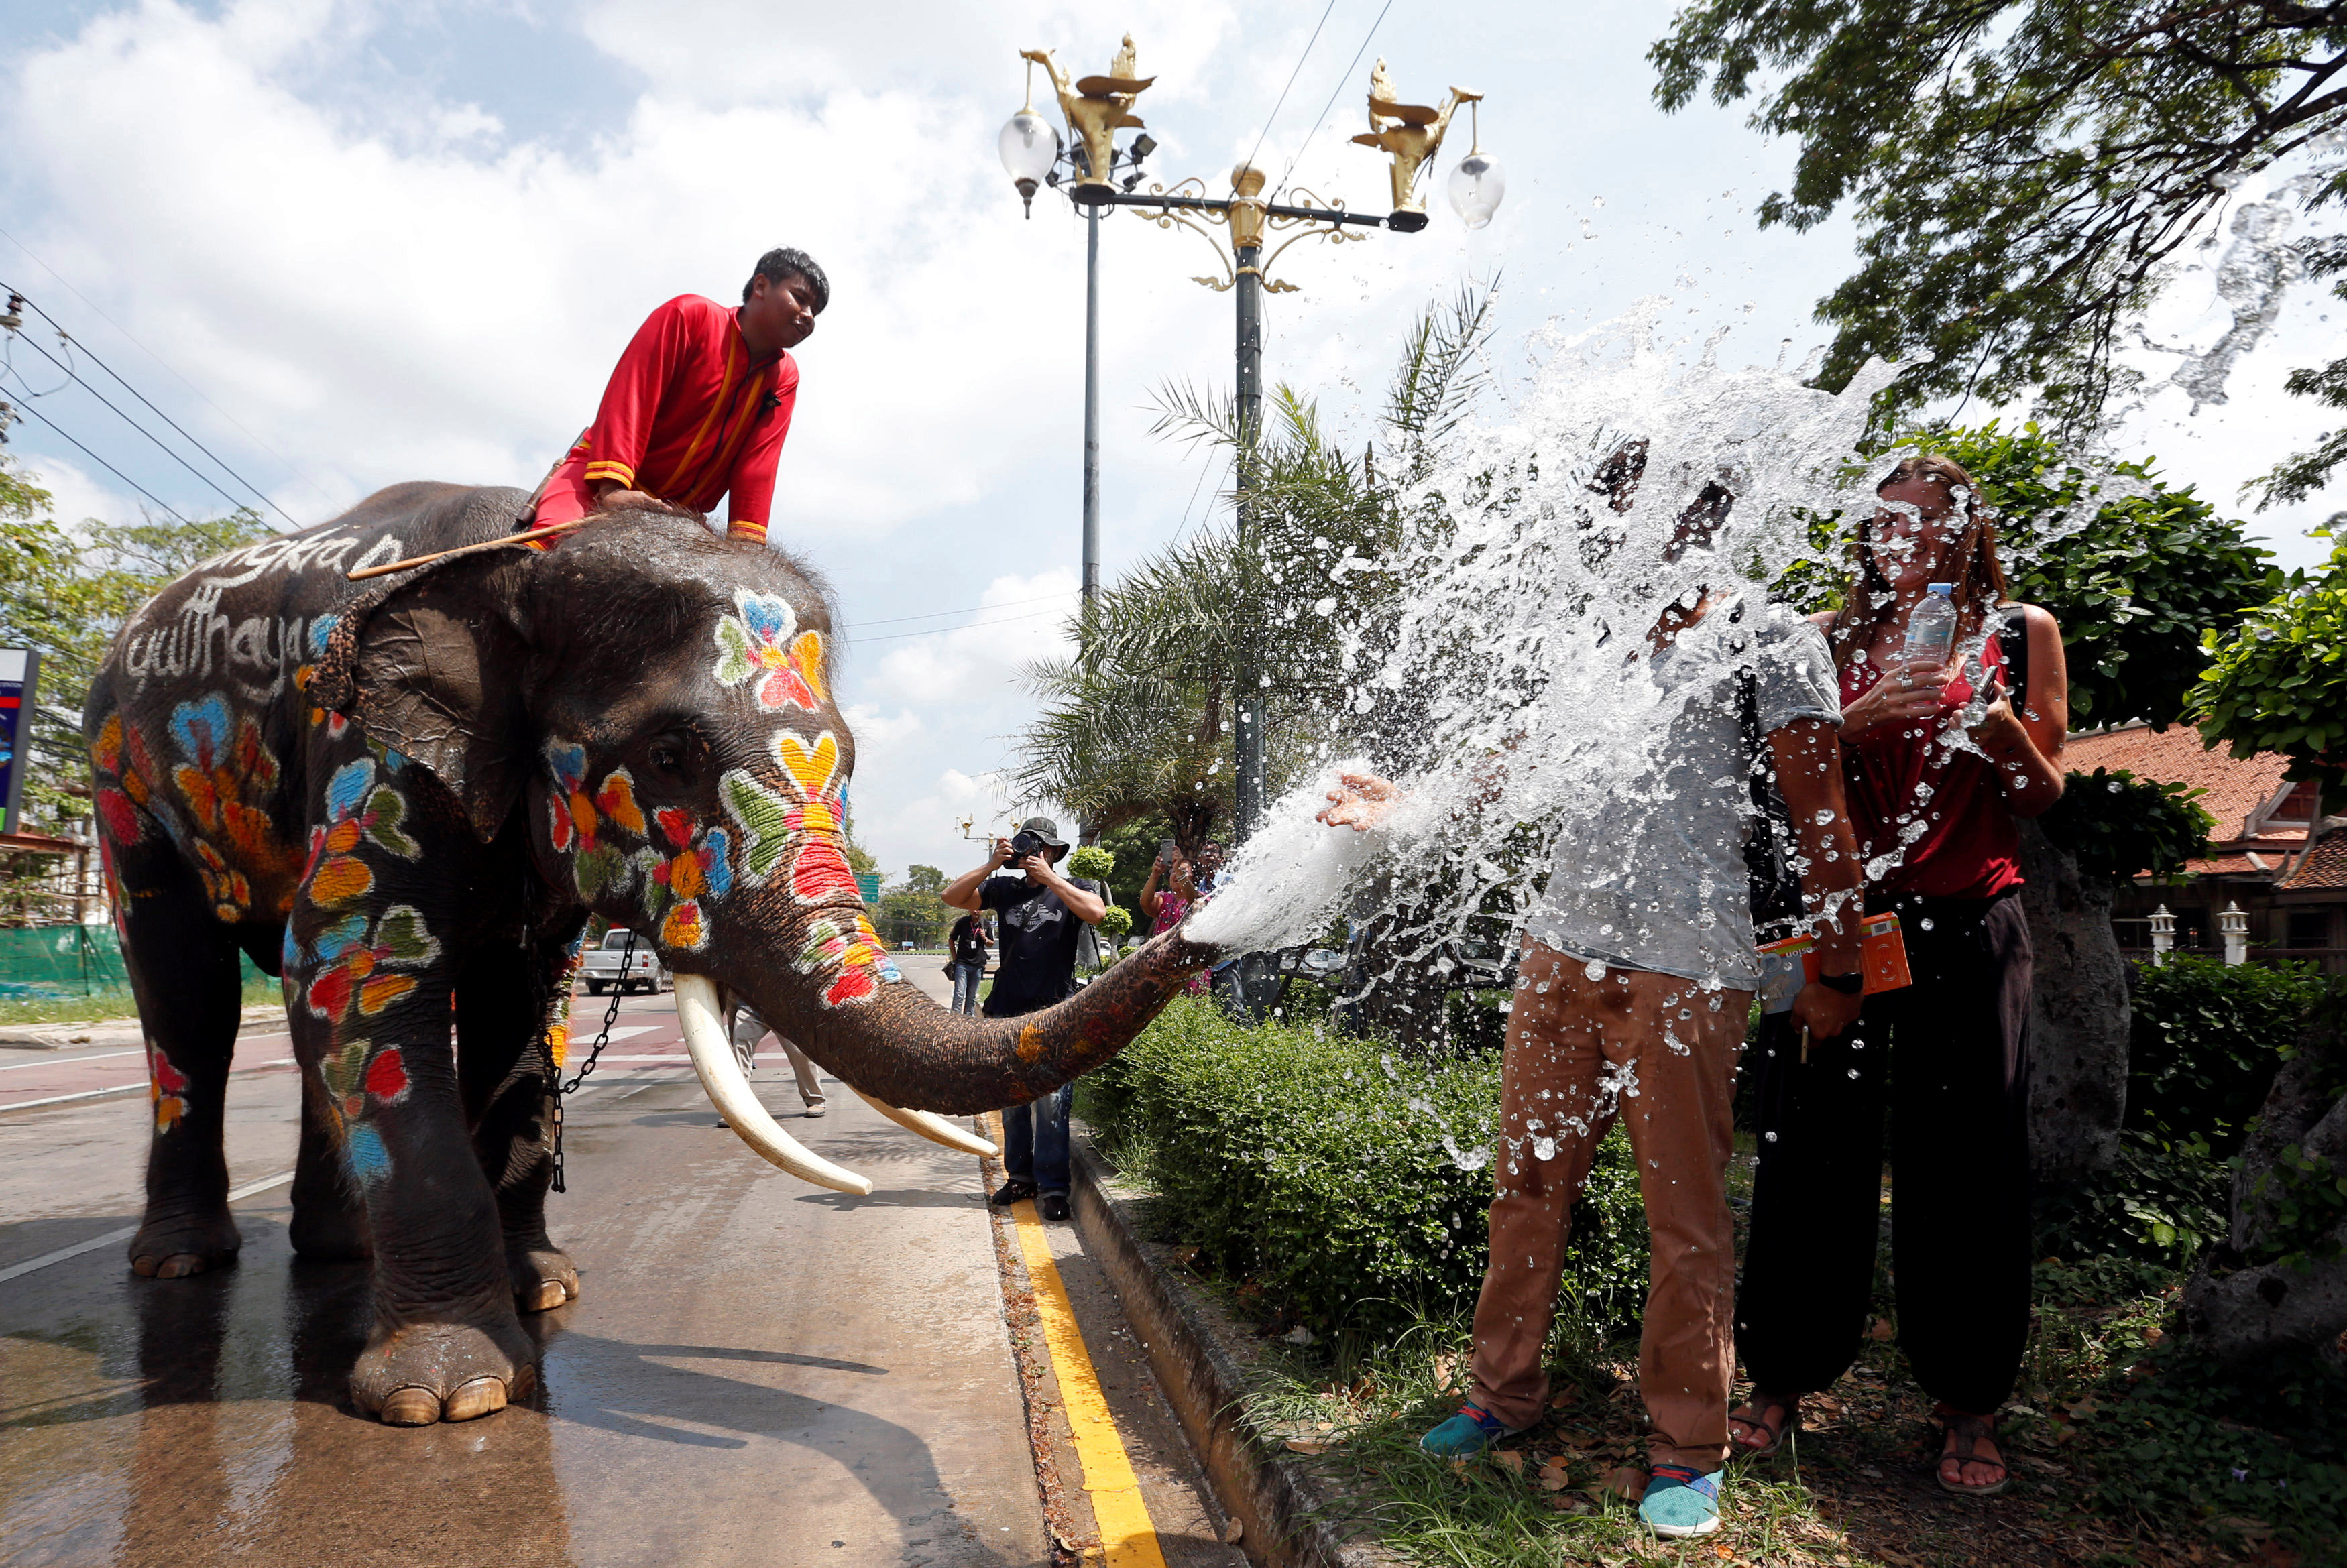 فيل يرش المياه على السياح